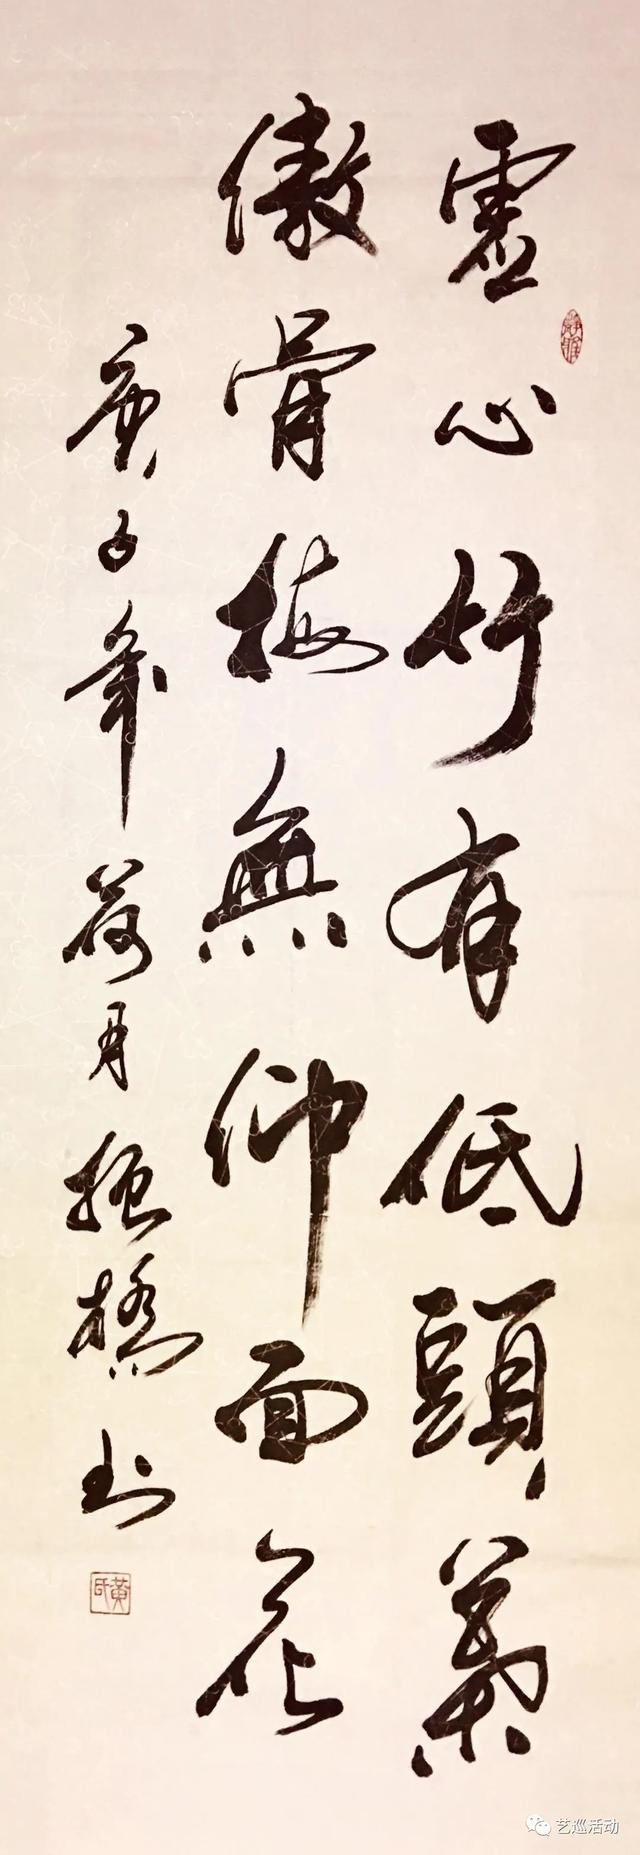 中國當代書畫愛好者——林義興、黃振橋、房詩博、楊生明、曾鳴等